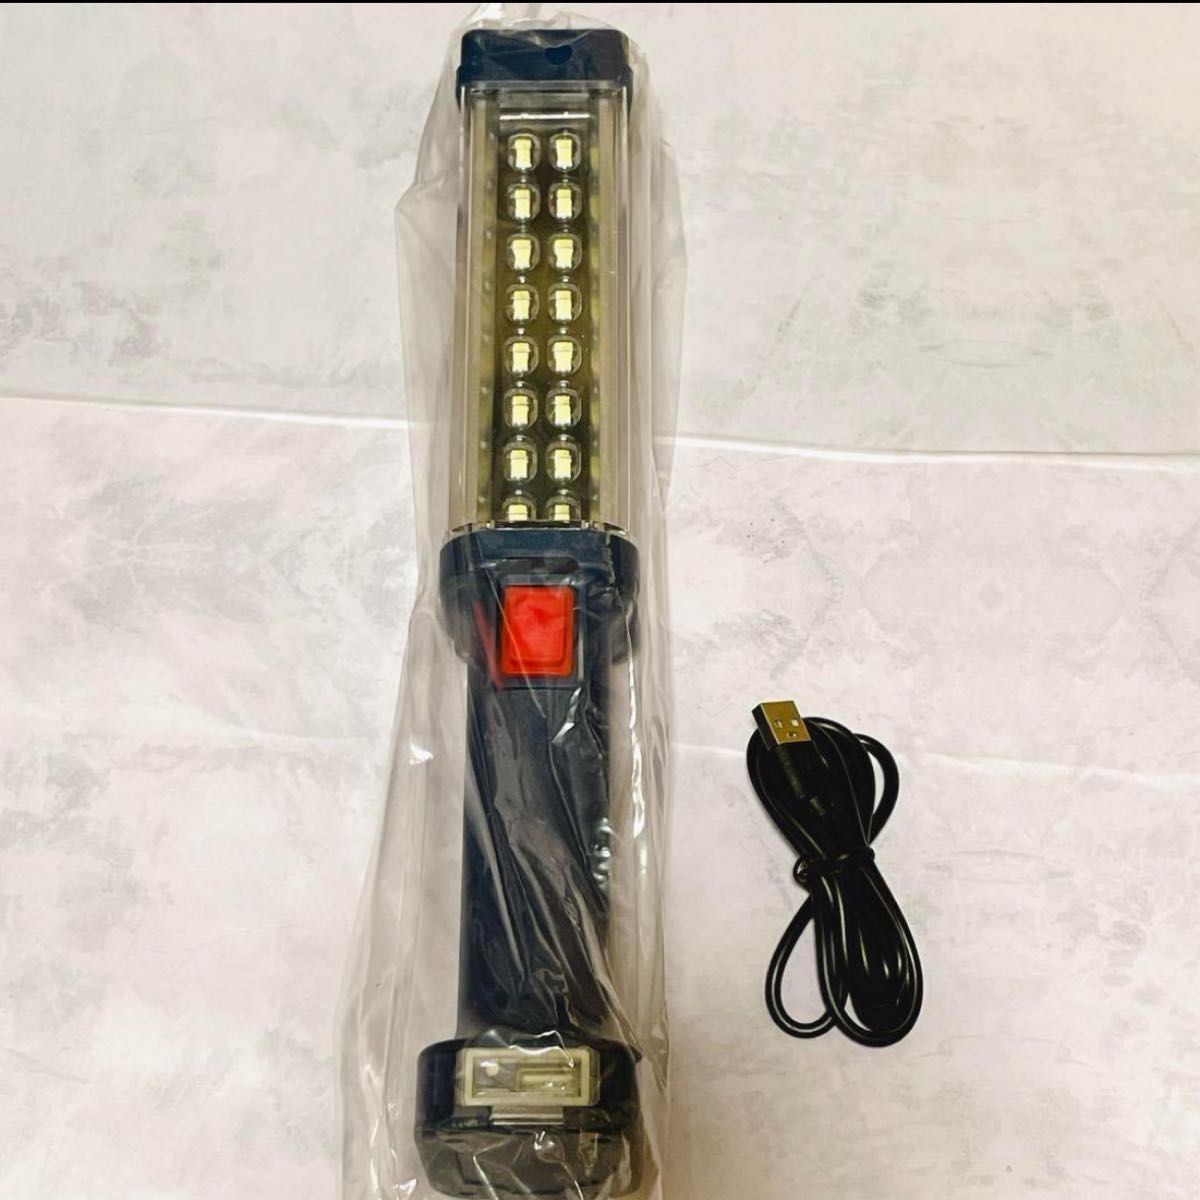 LED 作業灯 投光器 ライト 充電式 1200LM 昼白色 IPX6防水 usb充電式